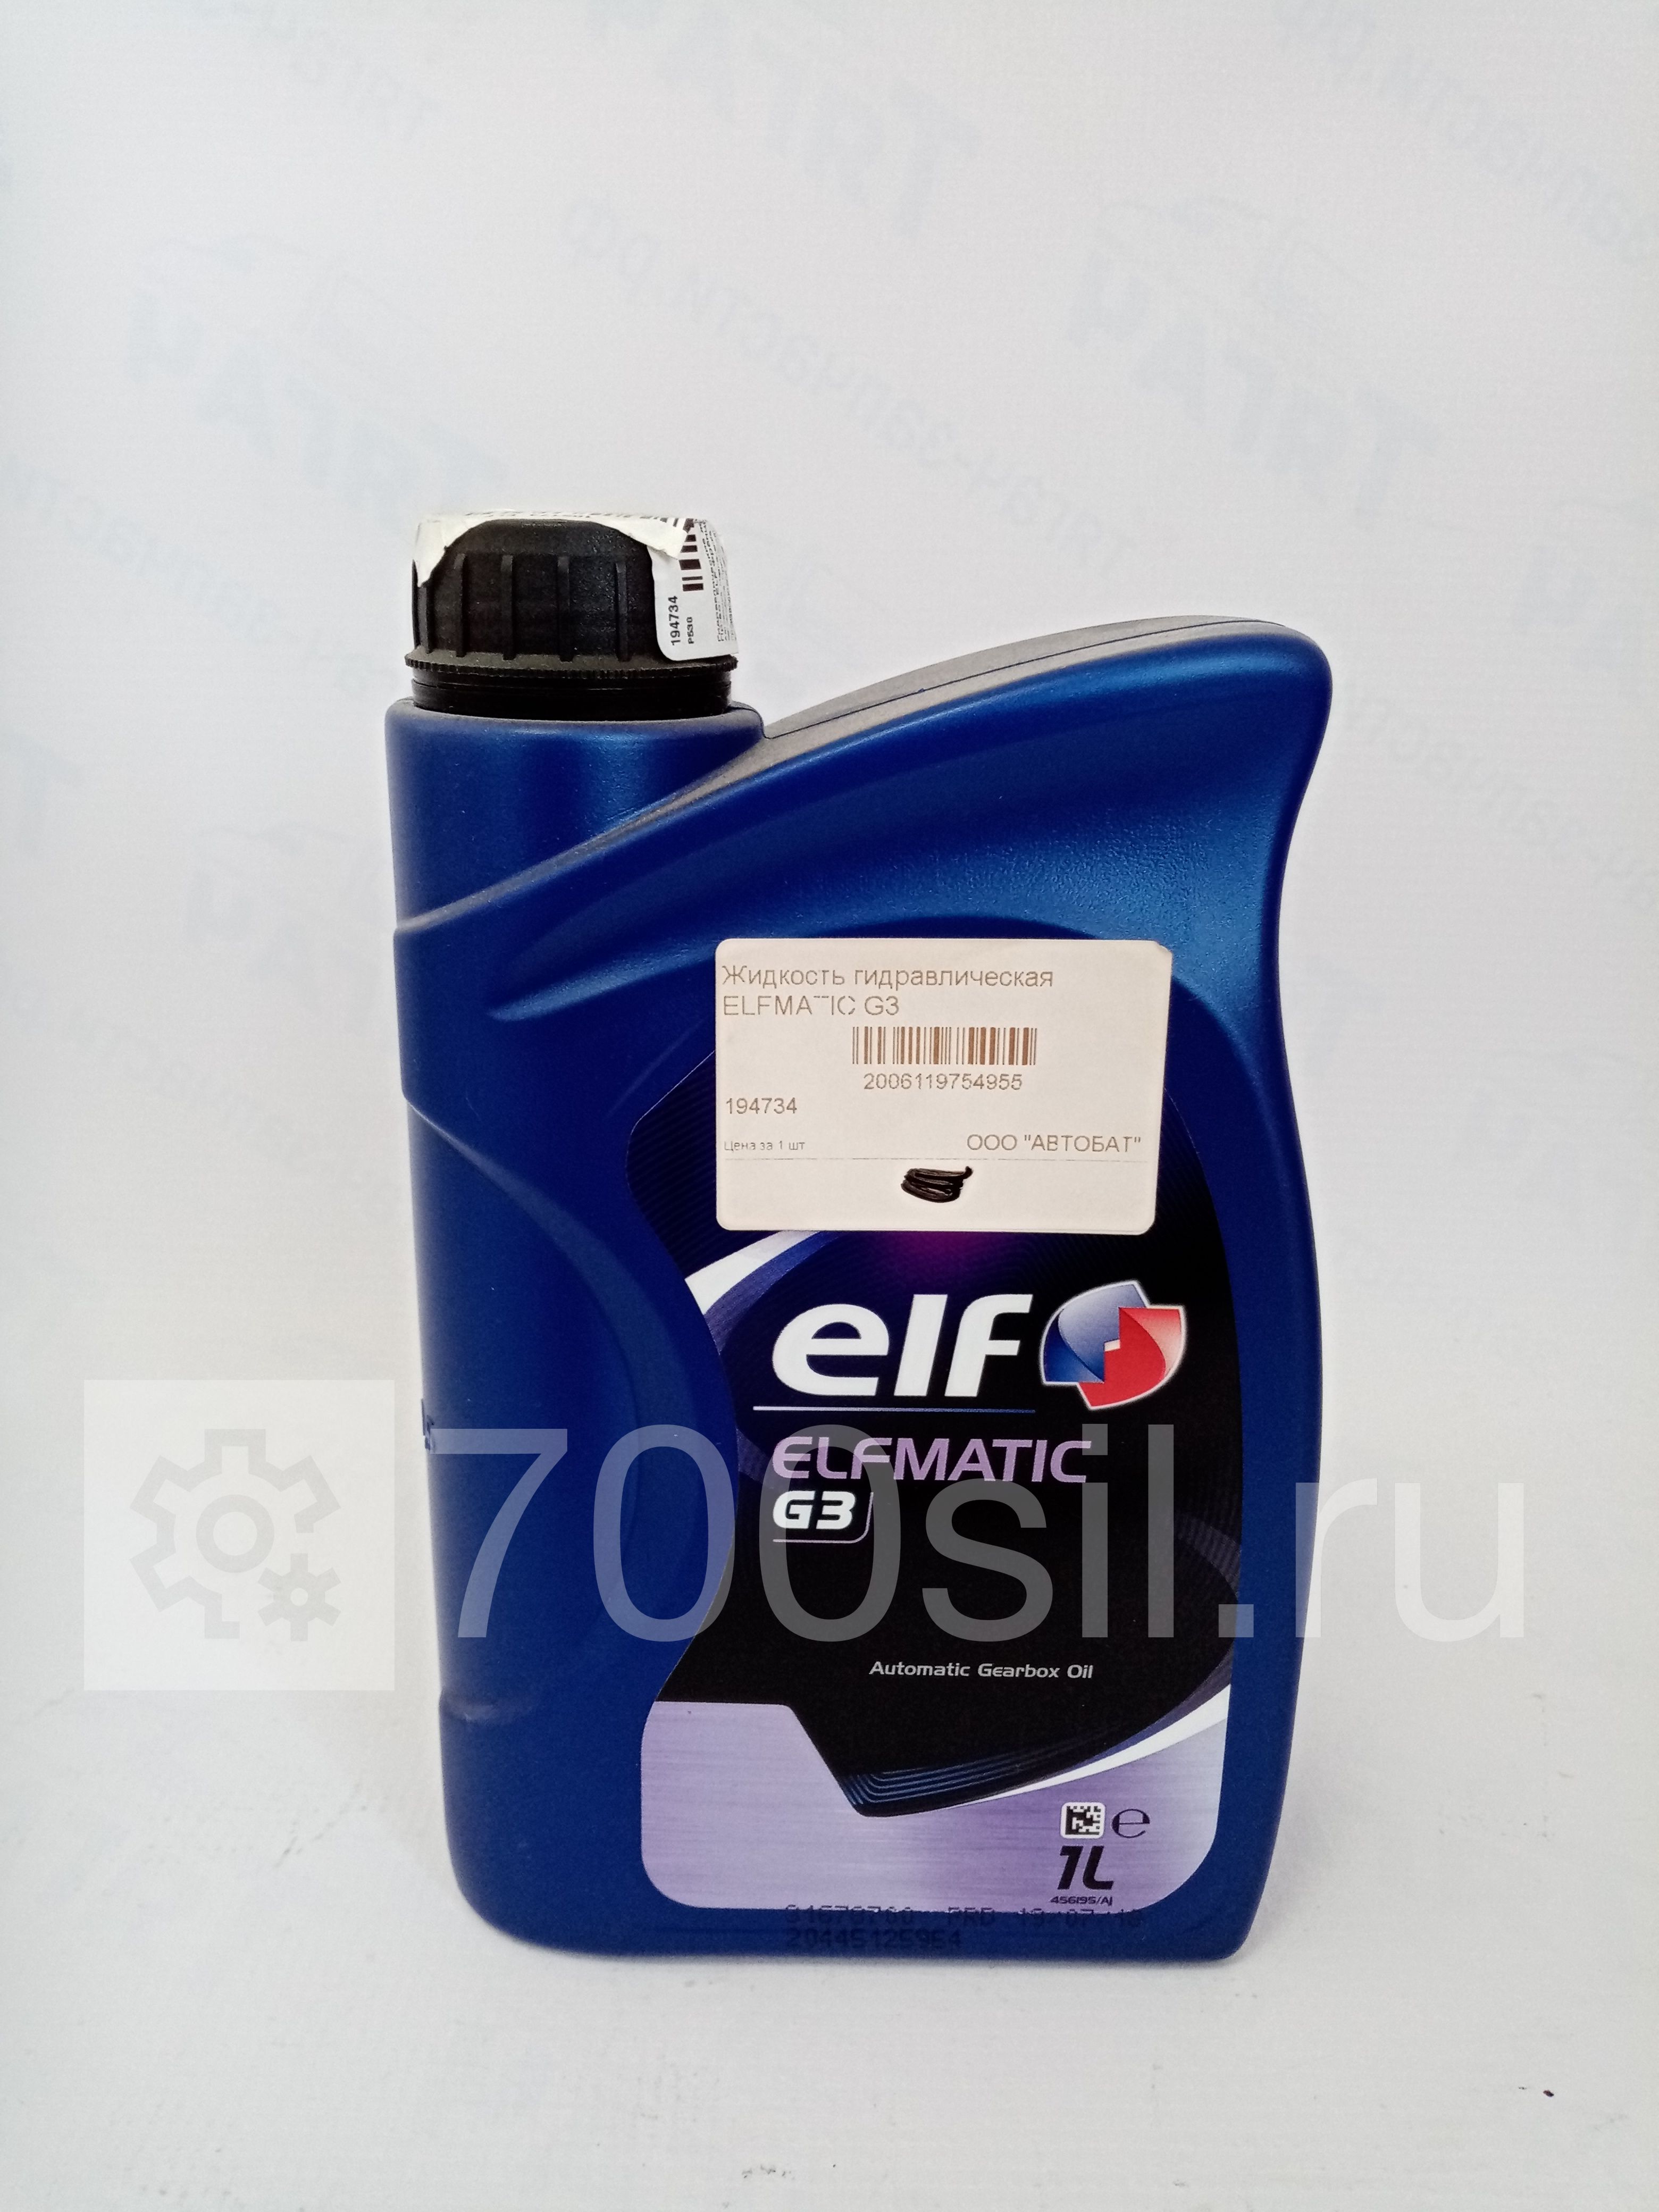 Жидкость гидравлическая ELFMATIC G3